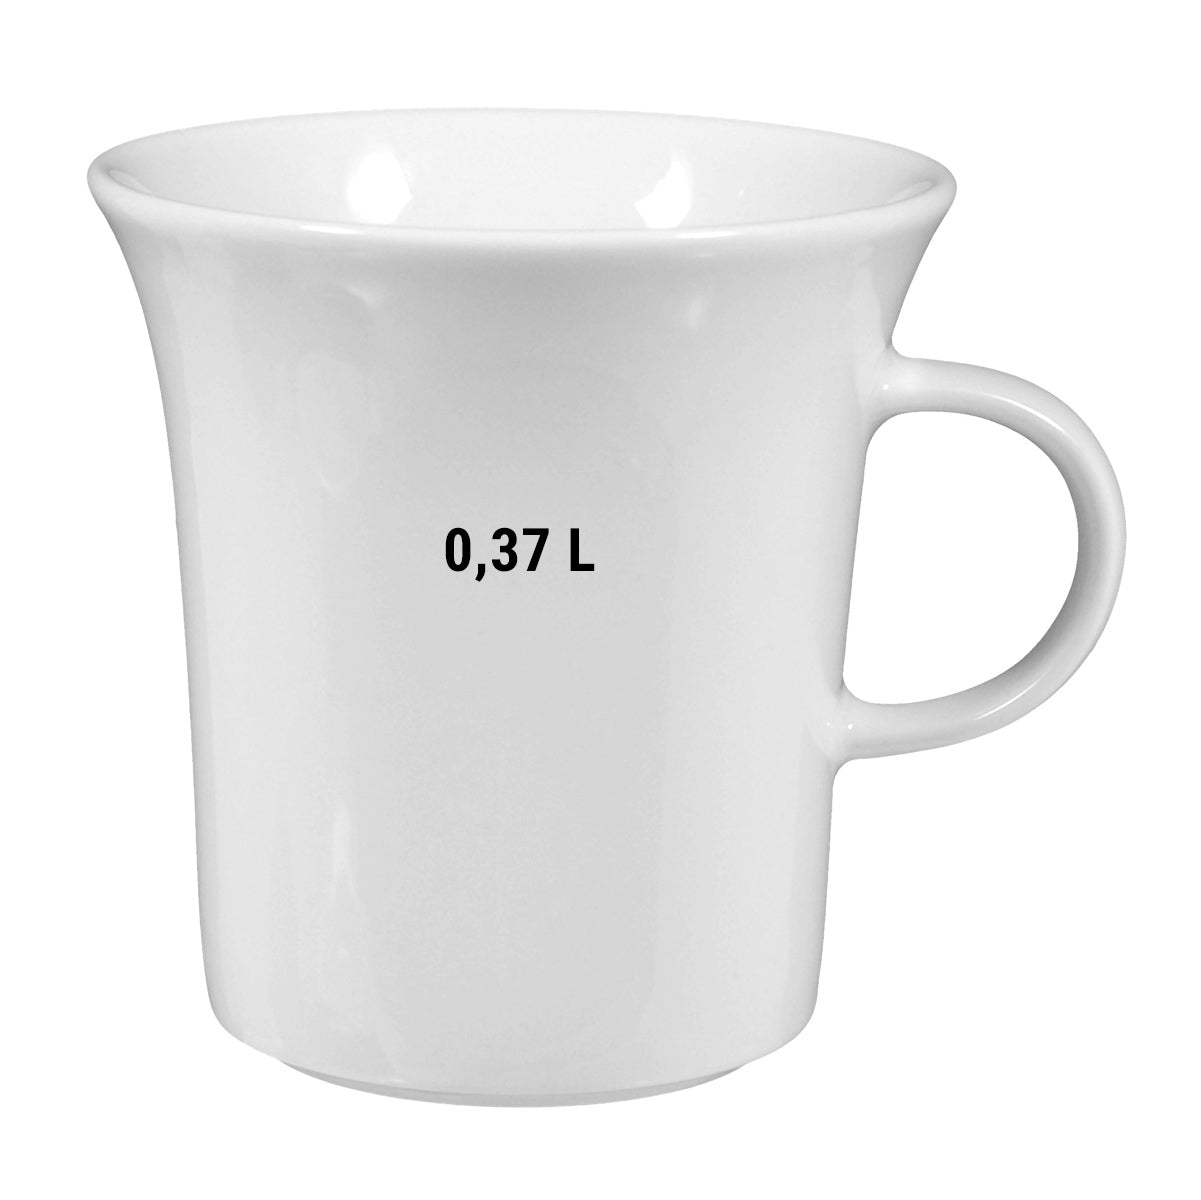 (6 stk.) Seltmann Weiden - Mælk kaffekop bæger - 0,37 liter